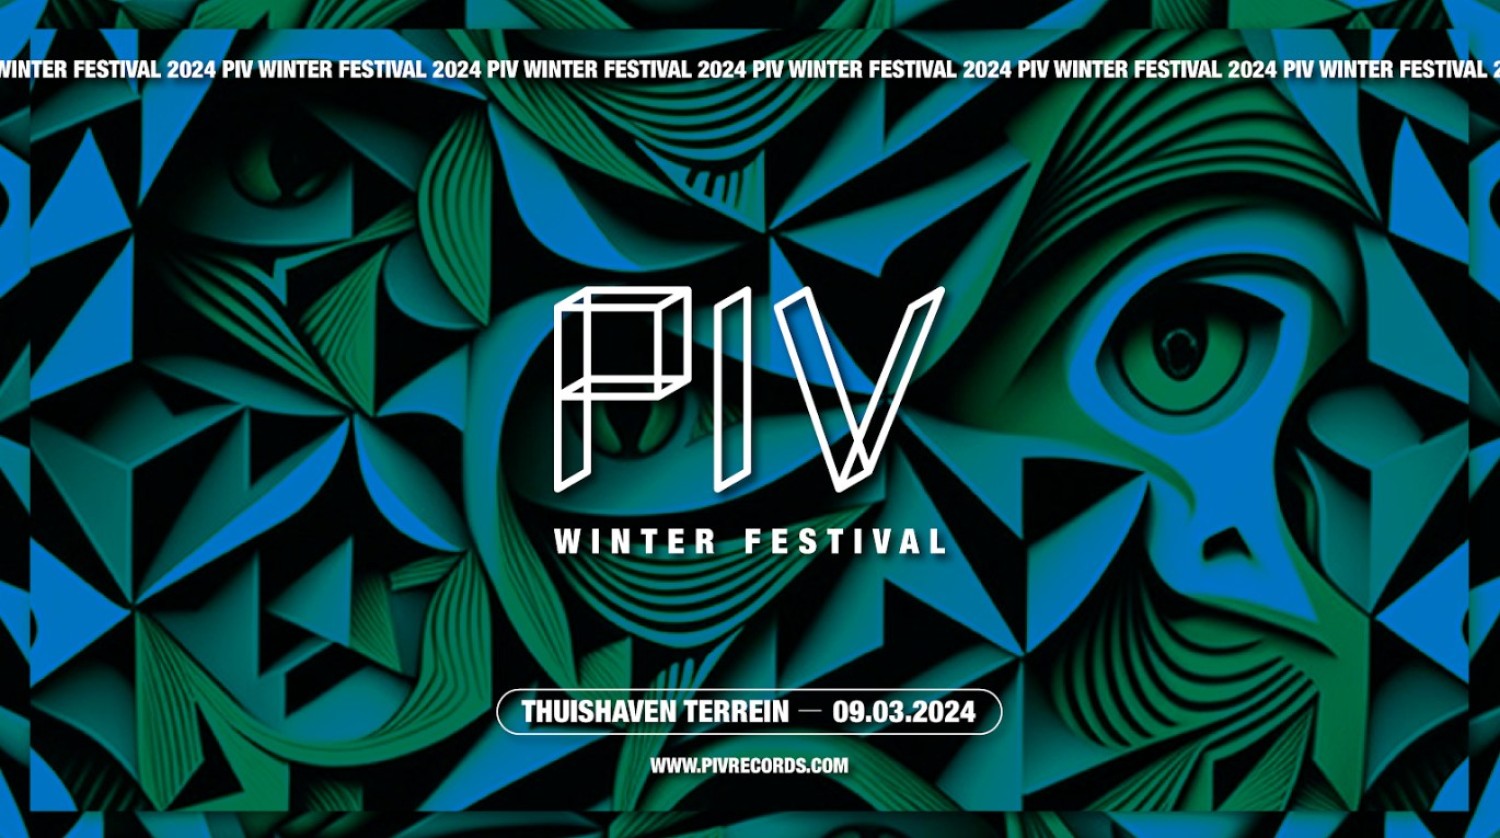 Party nieuws: PIV Winterfestival bij Thuishaven